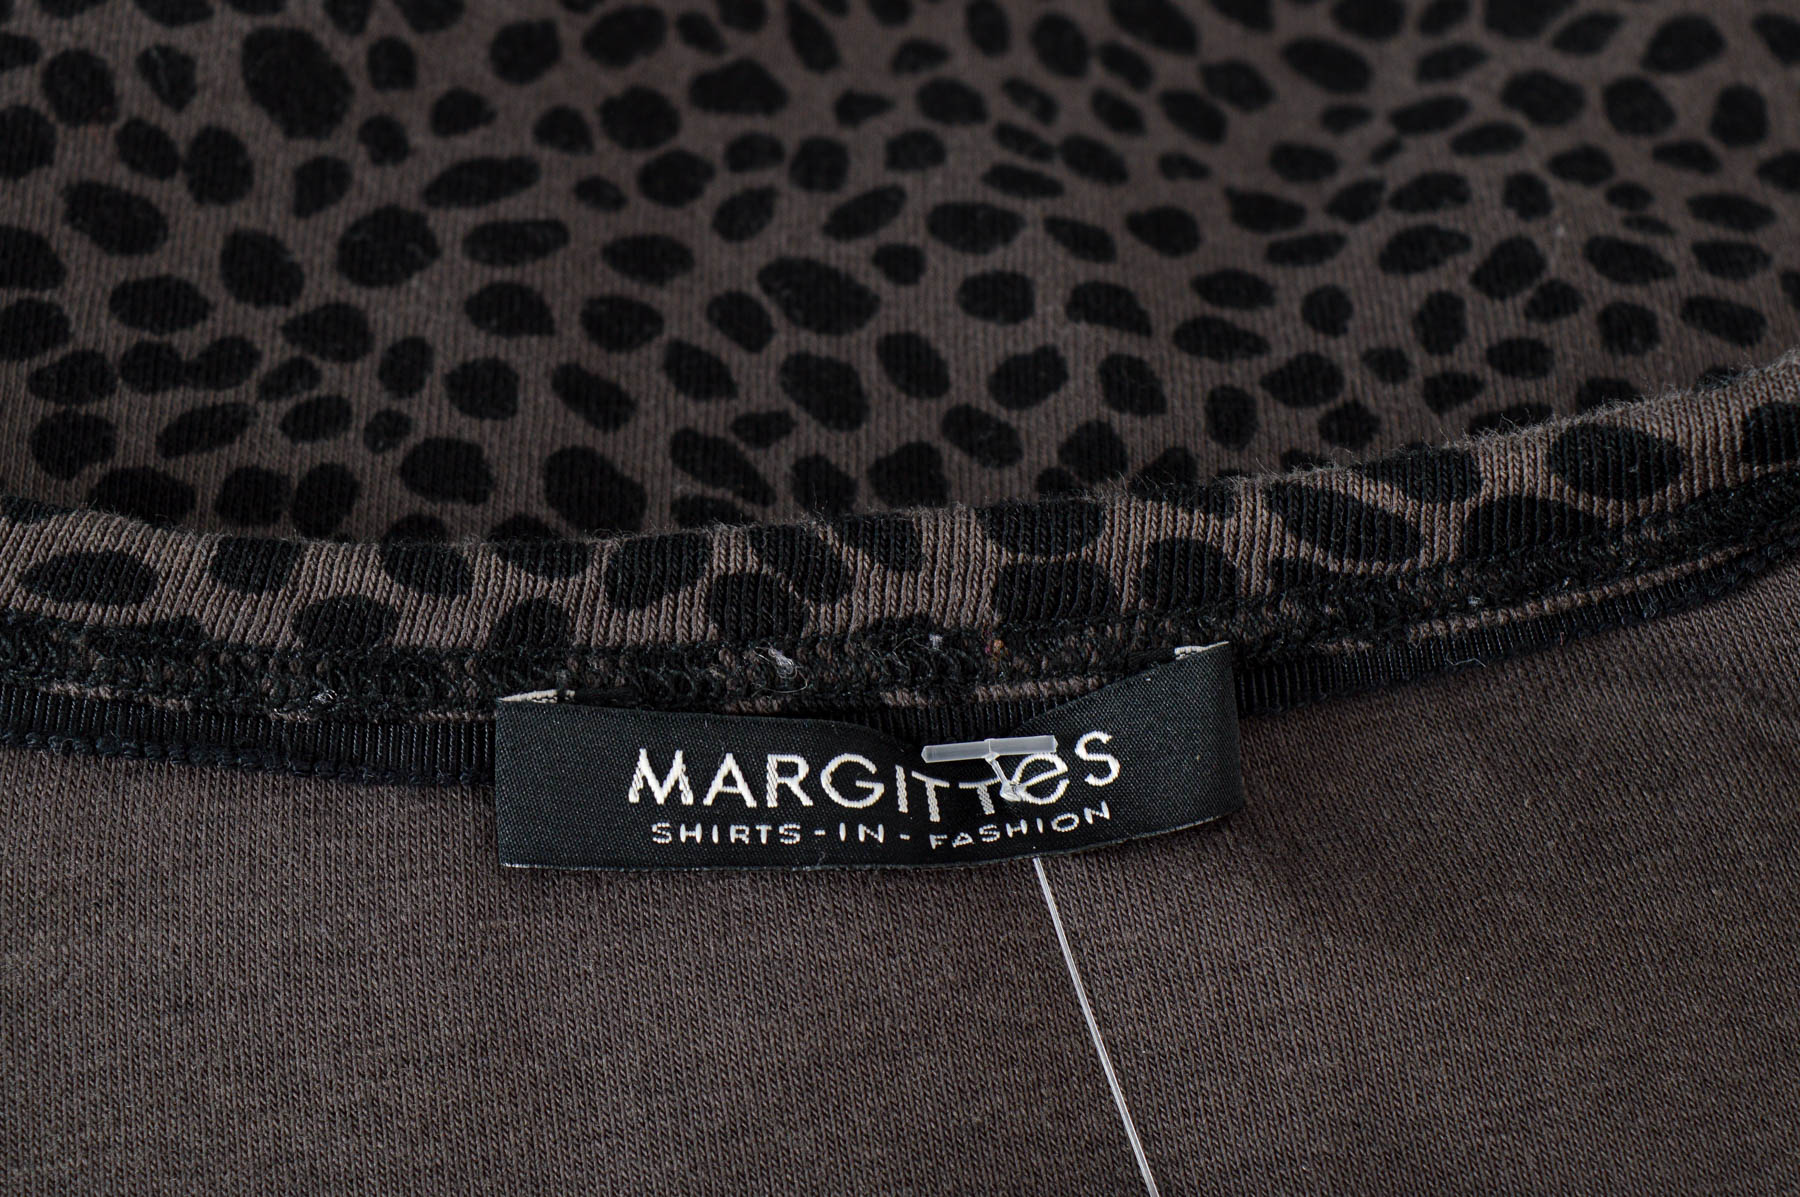 Women's blouse - Margittes - 2